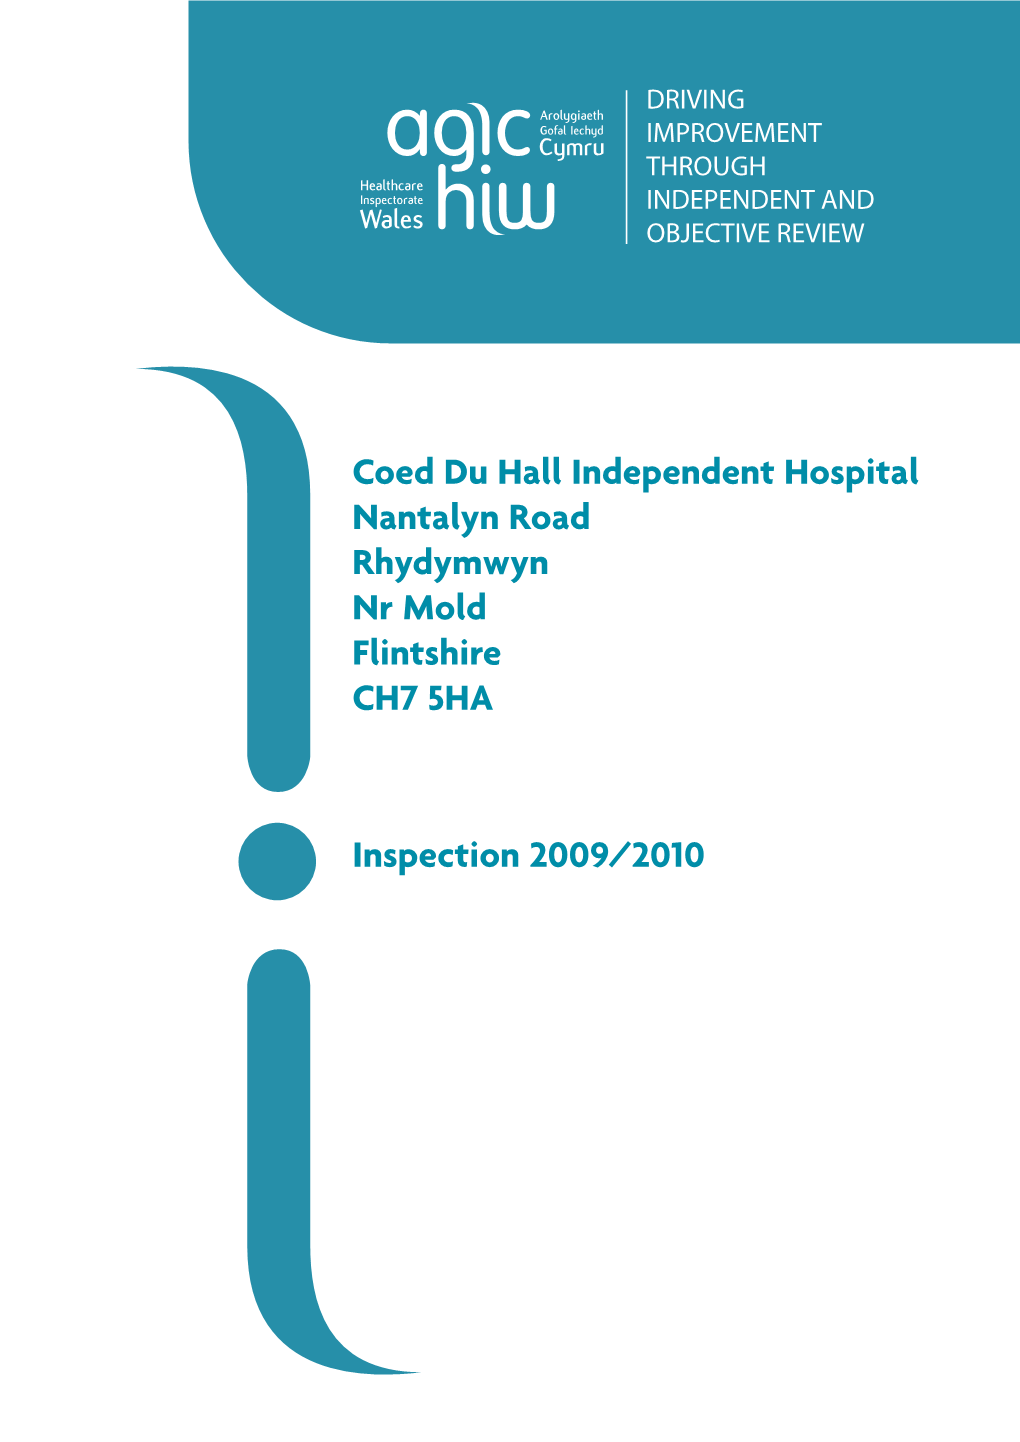 Coed Du Hall Independent Hospital Nantalyn Road Rhydymwyn Nr Mold Flintshire CH7 5HA